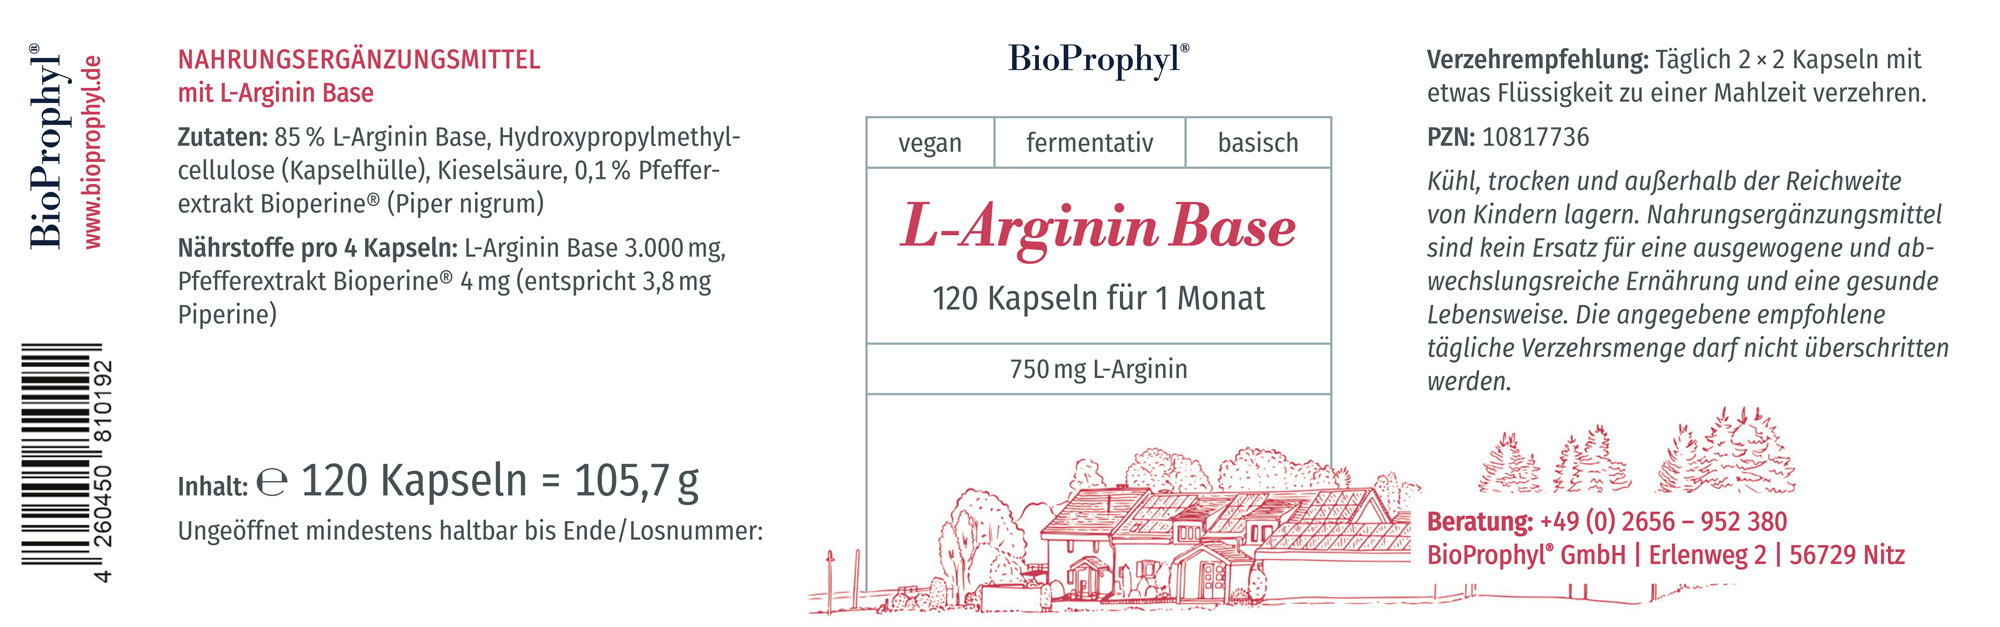 Produktetikett von L-Arginin Base